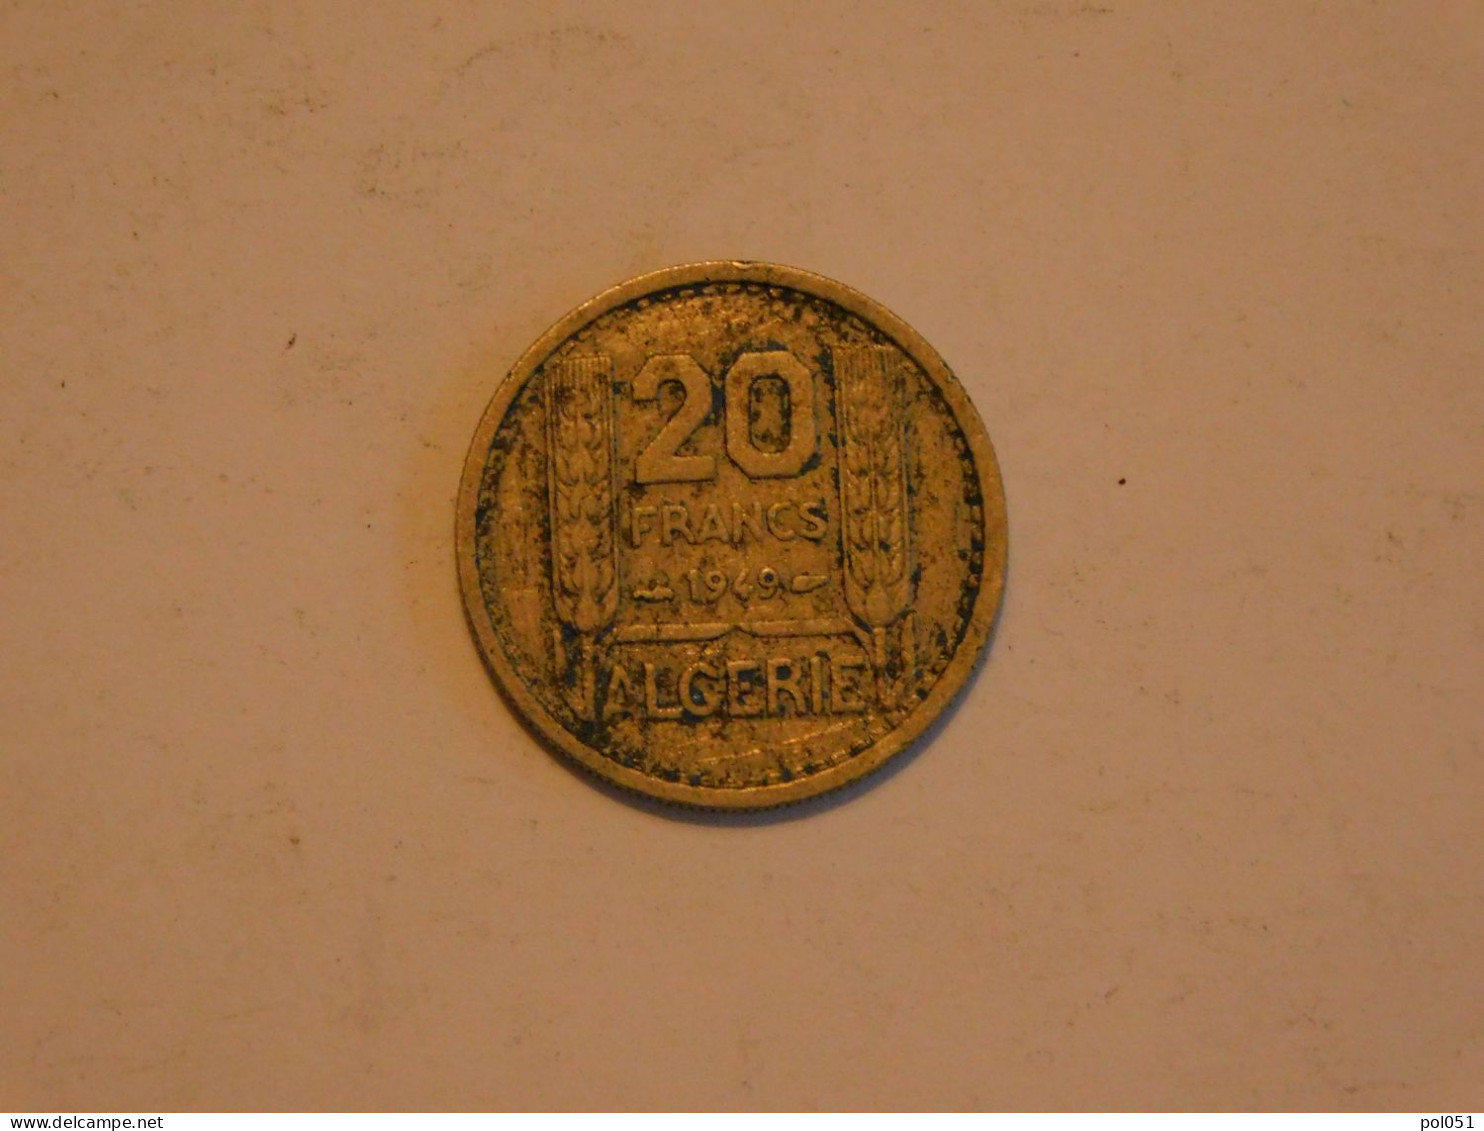 ALGERIE 20 Francs 1949 - Argelia